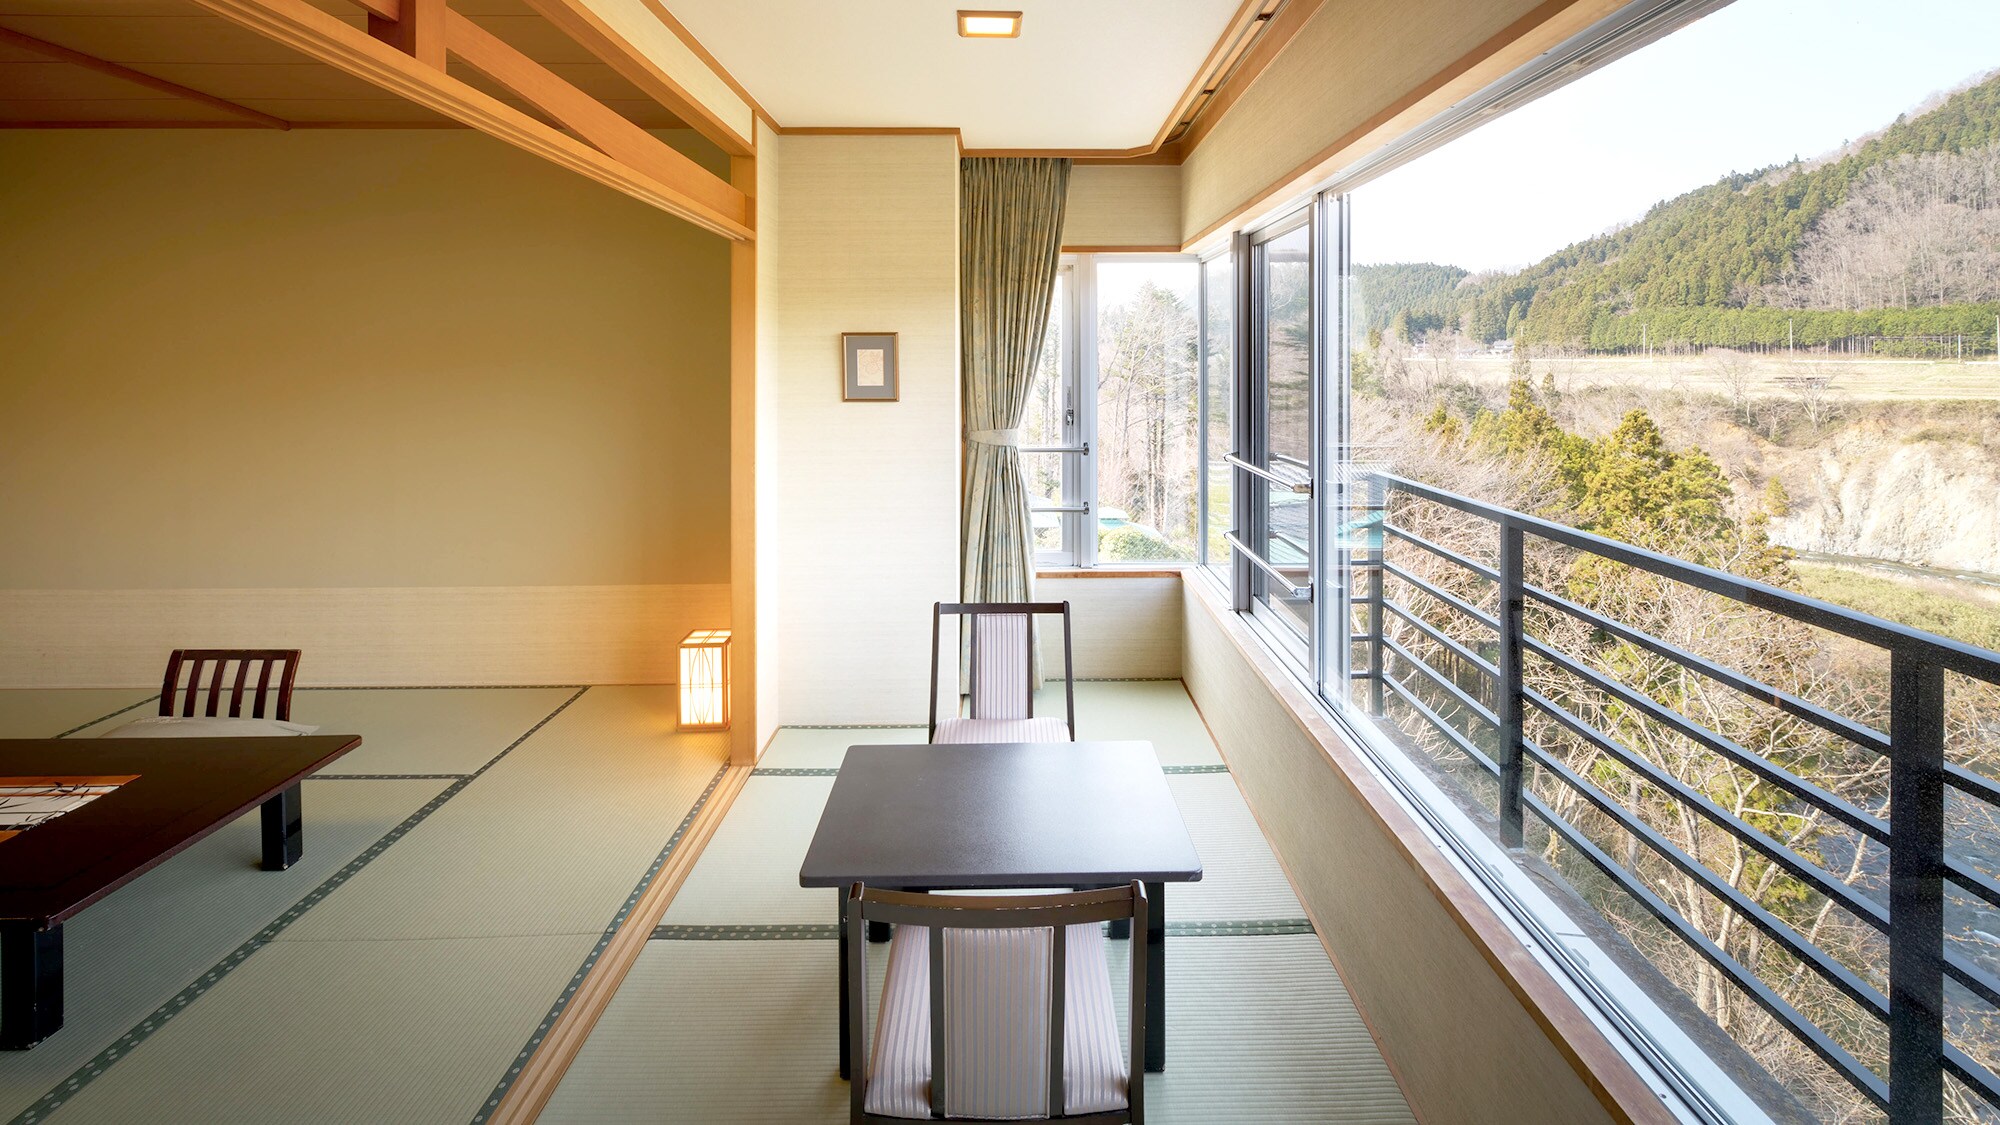 ตัวอย่างห้องสไตล์ญี่ปุ่น [ปลอดบุหรี่]... ห้องพักทุกห้องหันหน้าไปทางแม่น้ำ และท่านสามารถเพลิดเพลินกับธรรมชาติตามฤดูกาลของ Akiu ได้จากระเบียงกว้าง